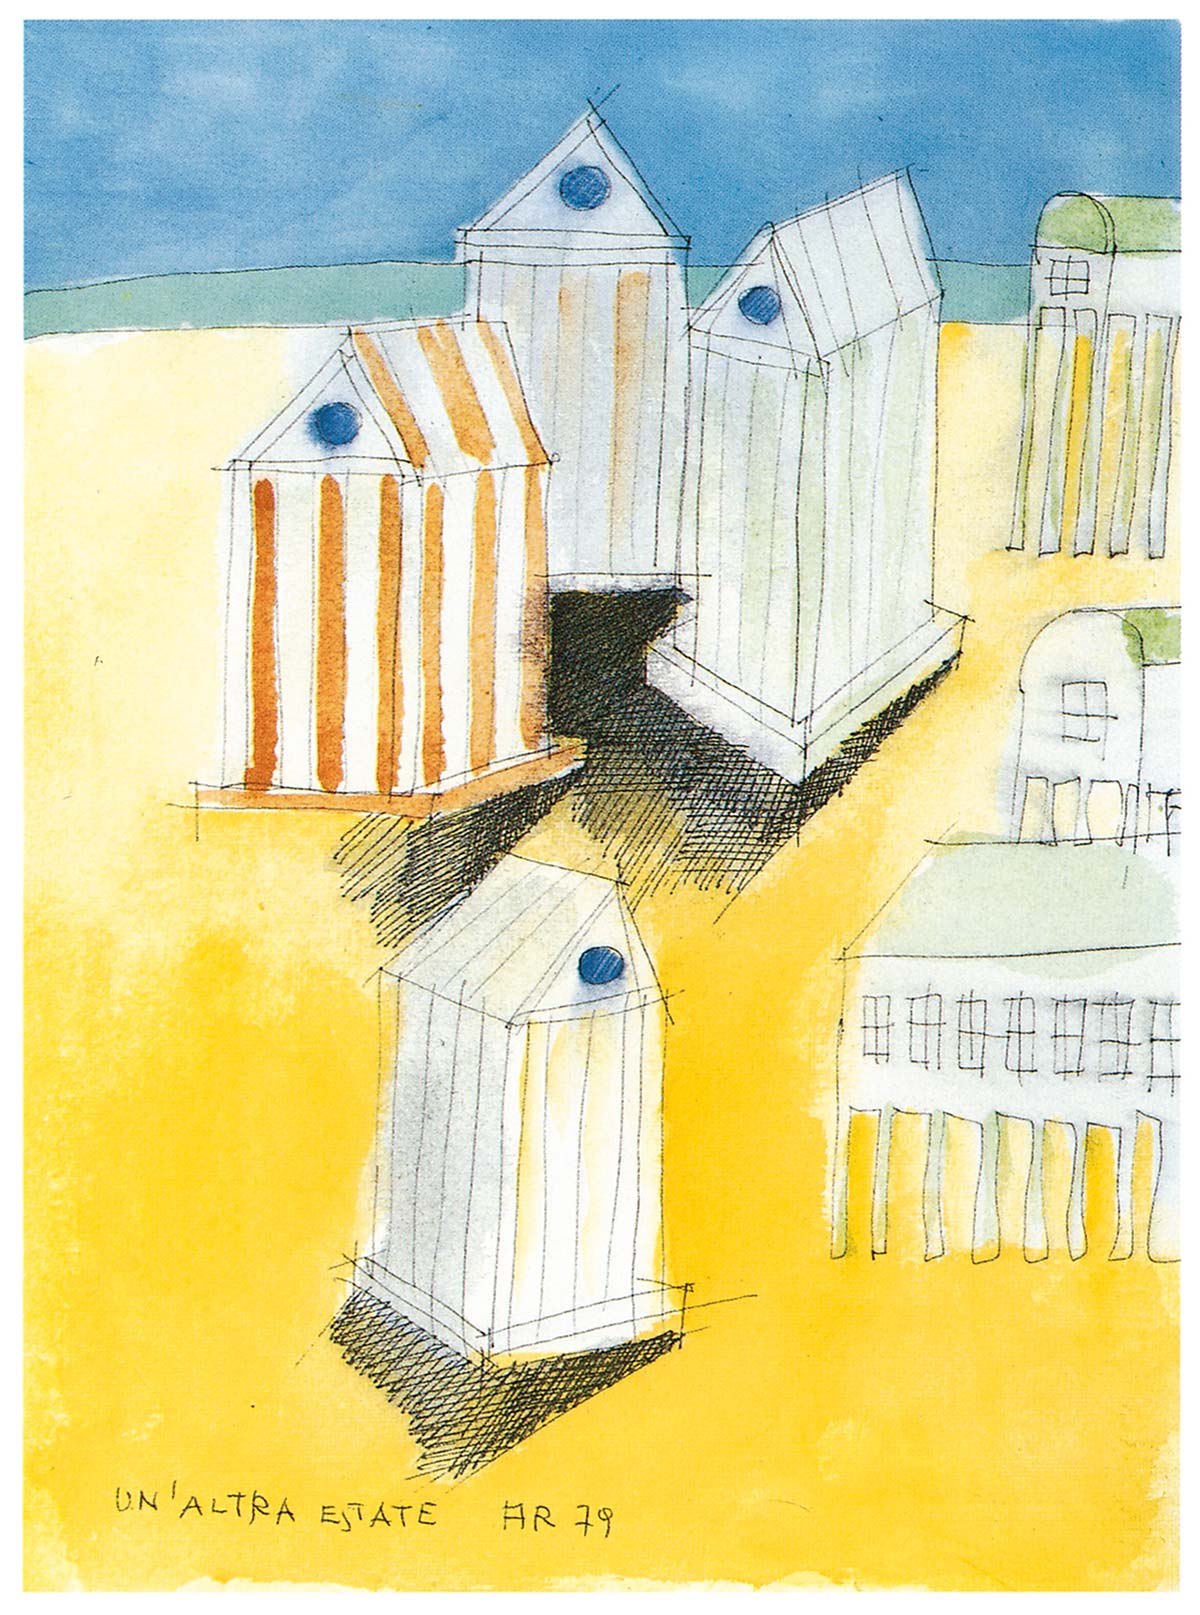 Un’altra estate by Aldo Rossi, 1979 - Courtesy Fondazione Aldo Rossi